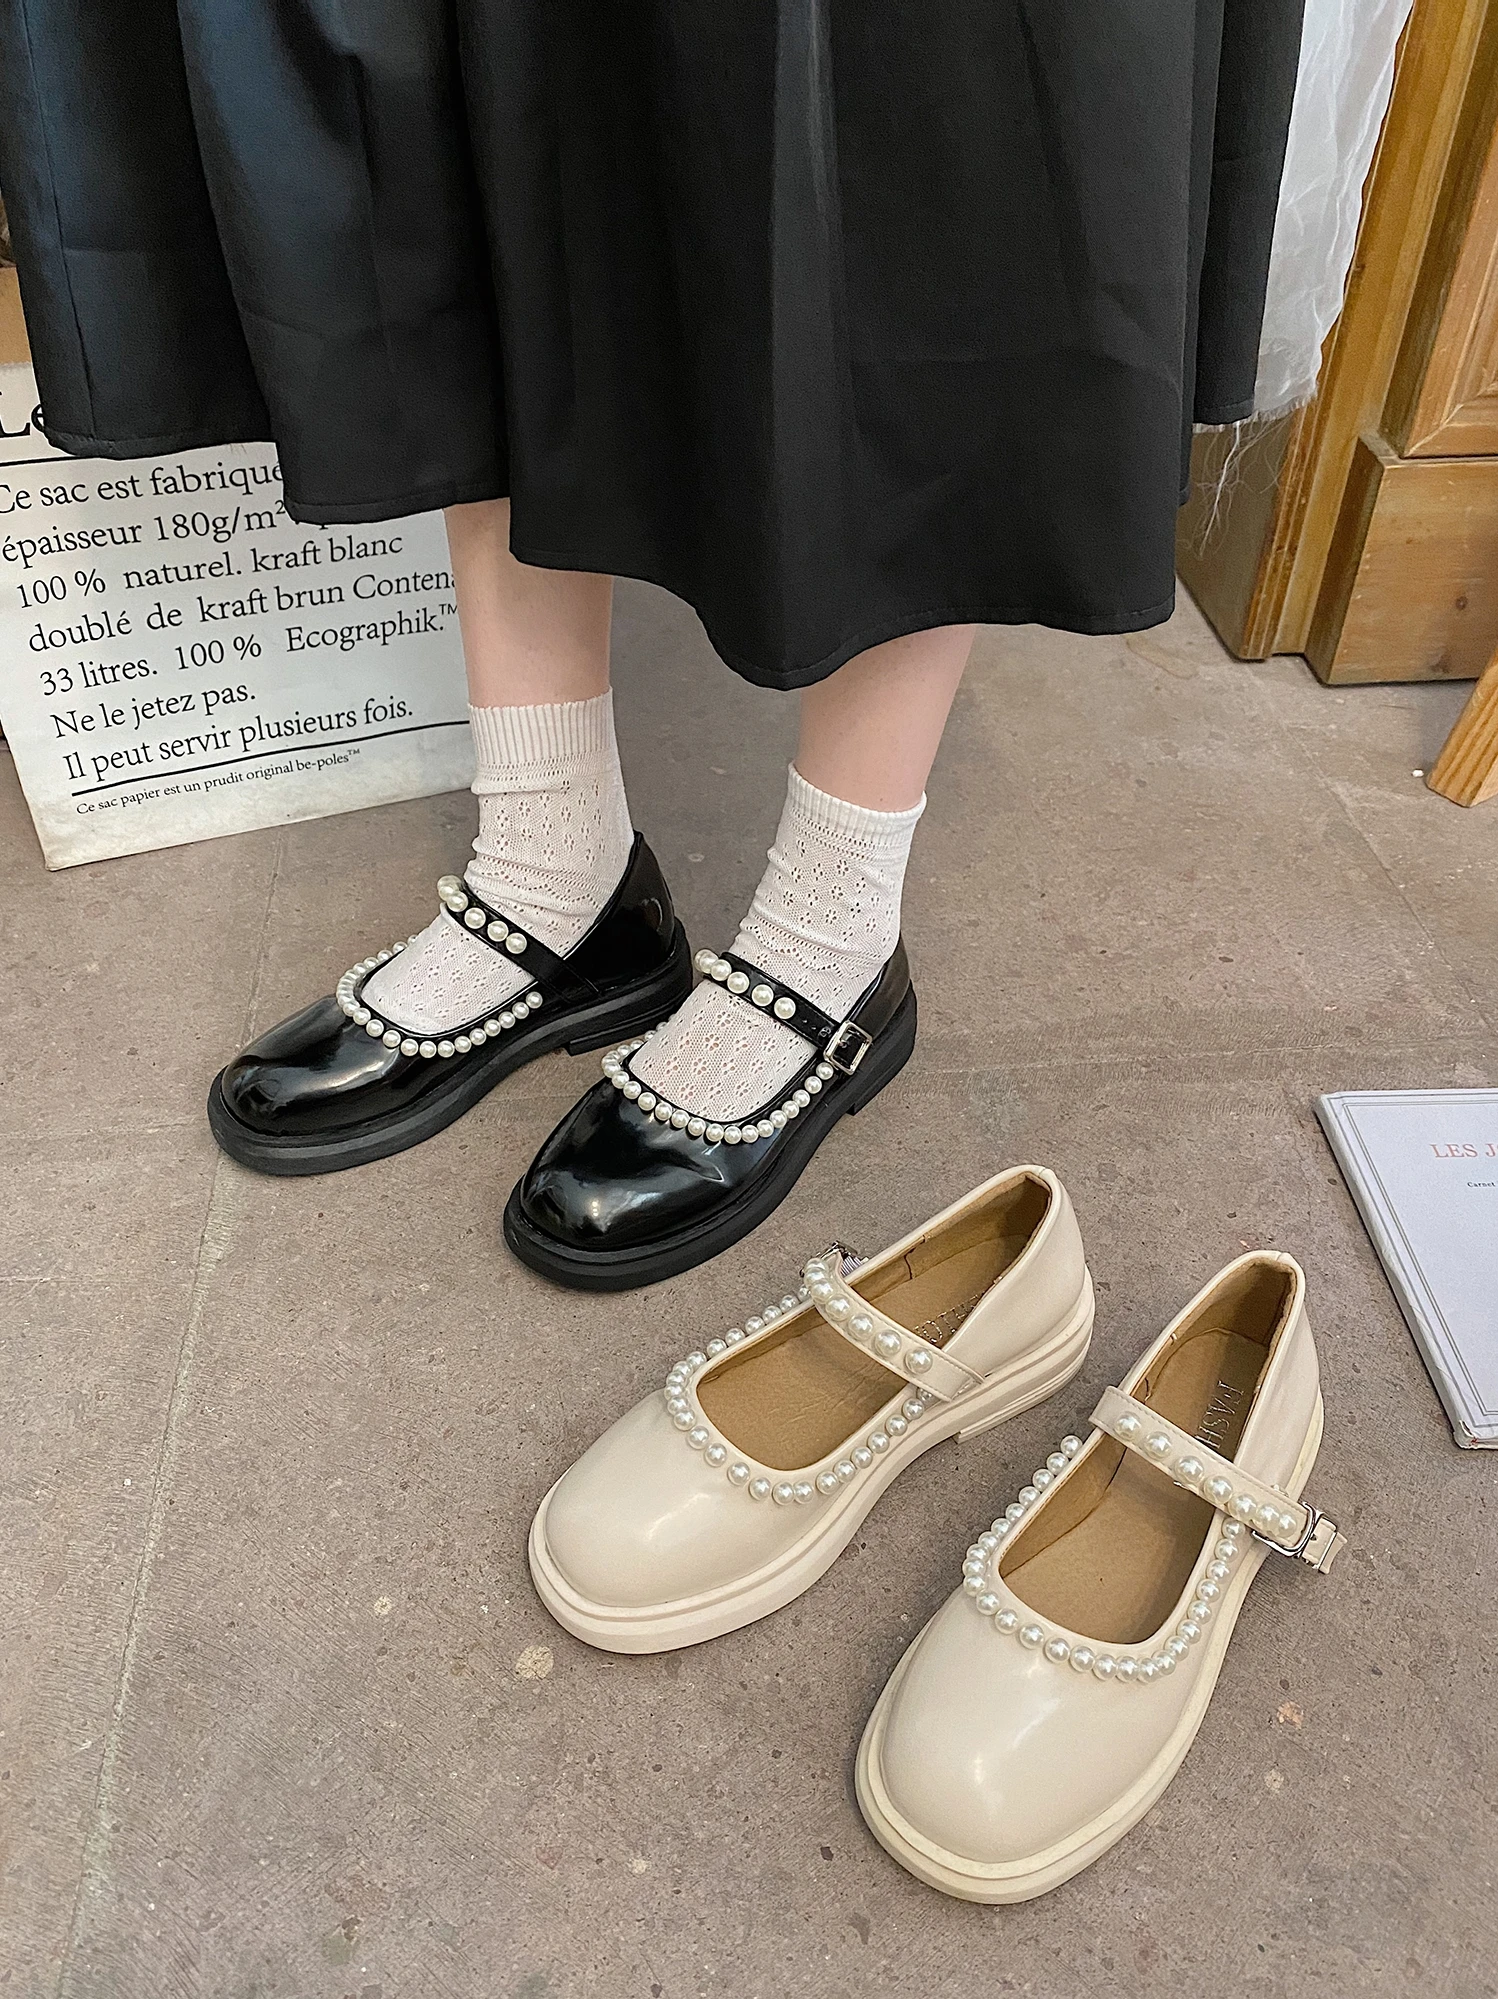 

Женские маленькие кожаные туфли, весна-осень 2021, Туфли Мэри Джейн в японском стиле, простые женские туфли на плоской подошве с закрытым носк...